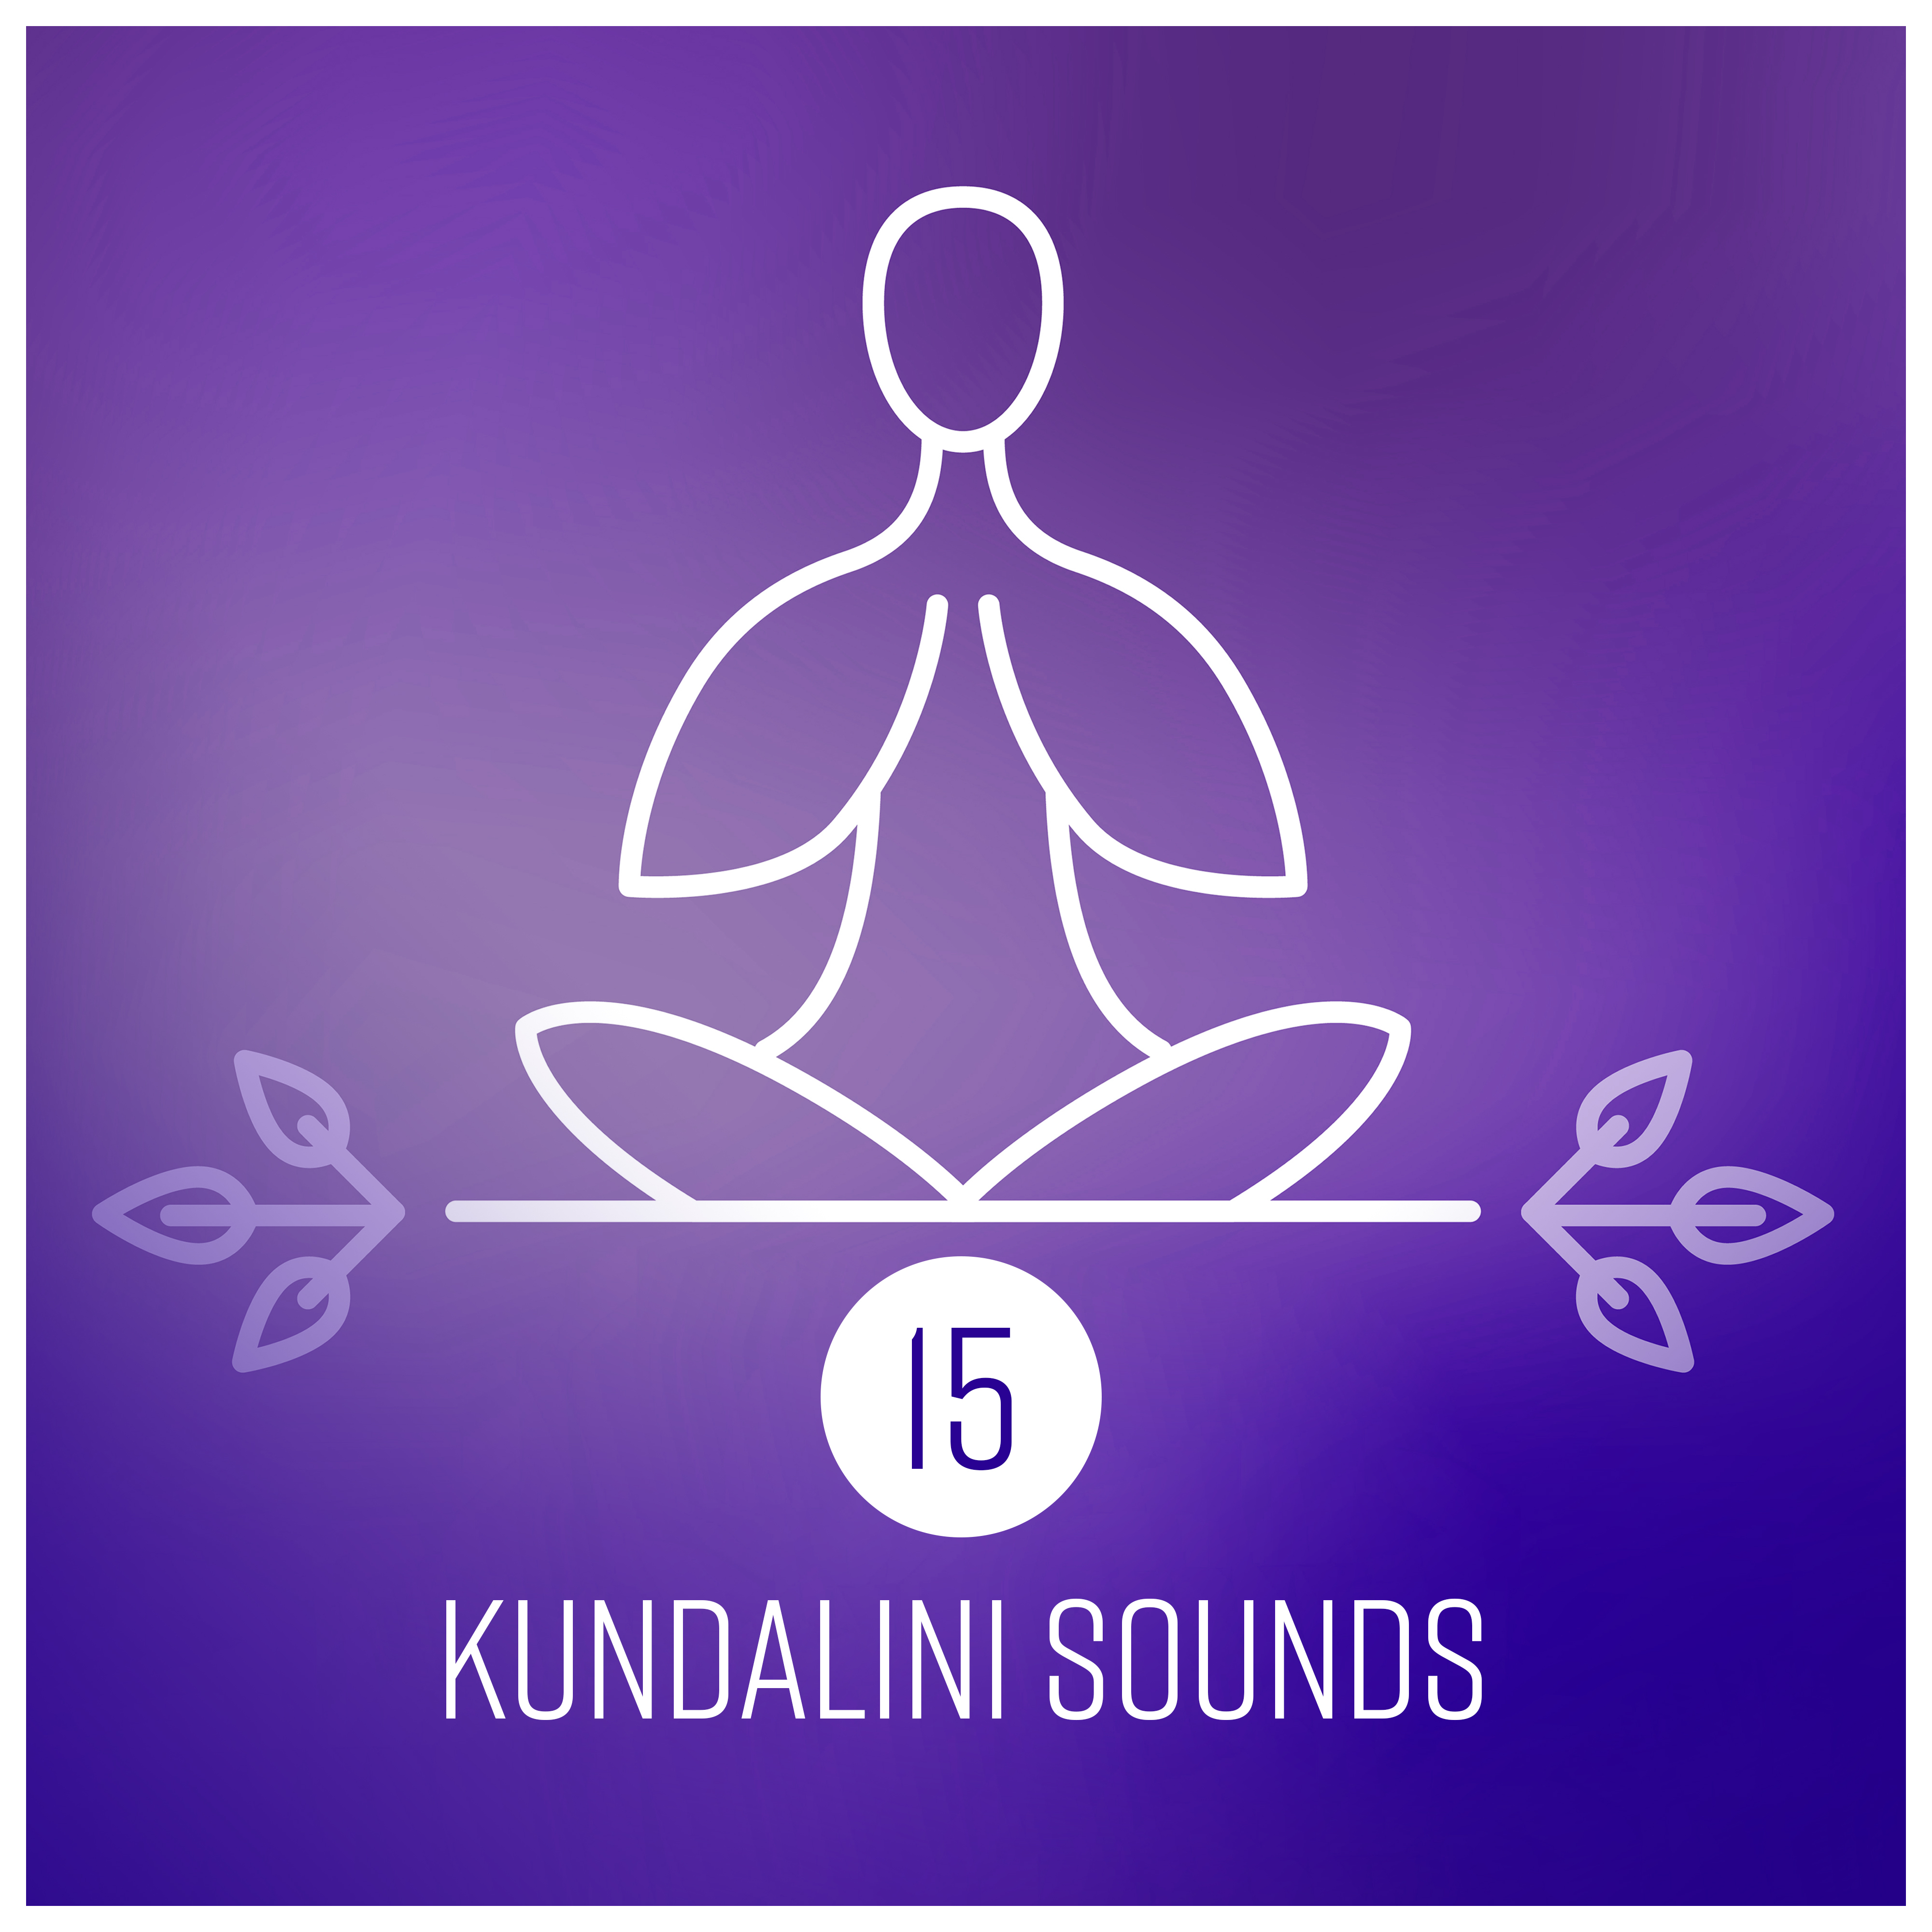 15 Kundalini Sounds